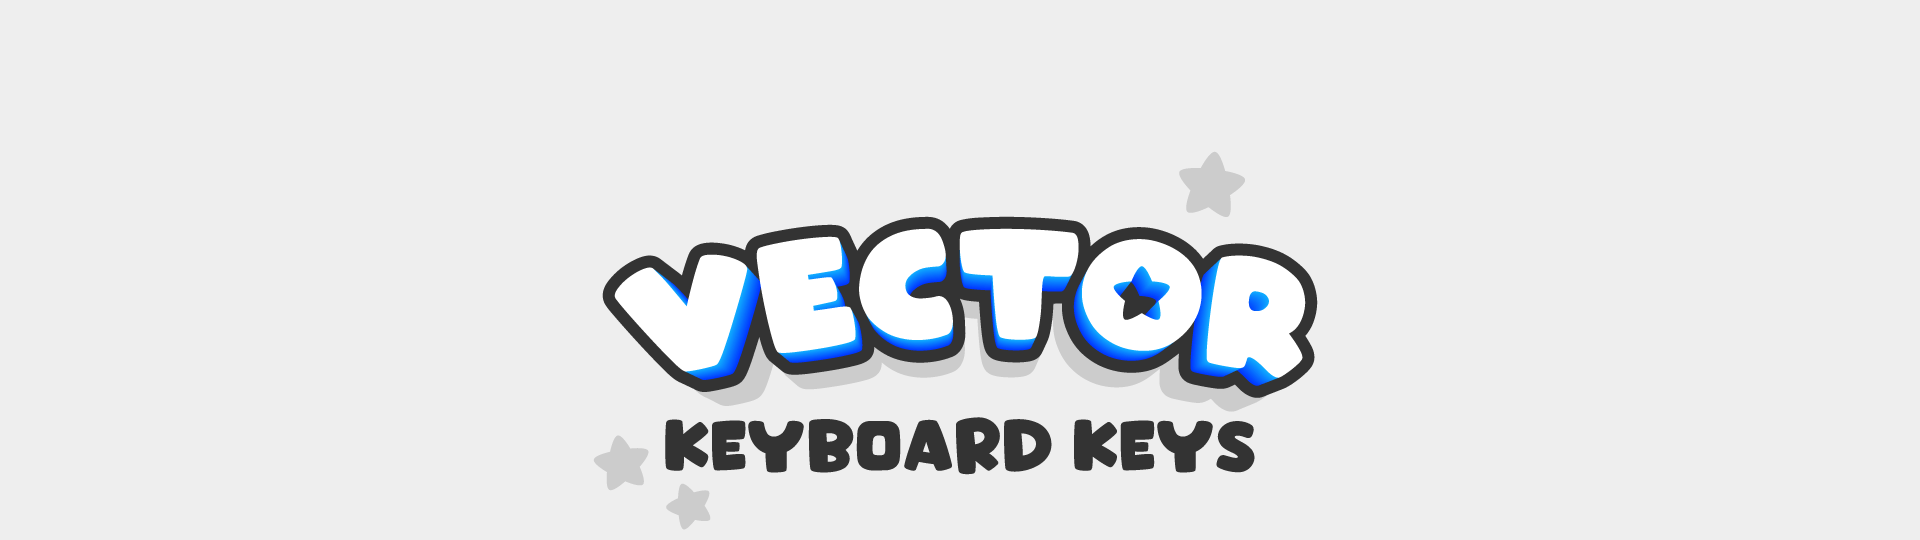 Vector Keyboard Keys